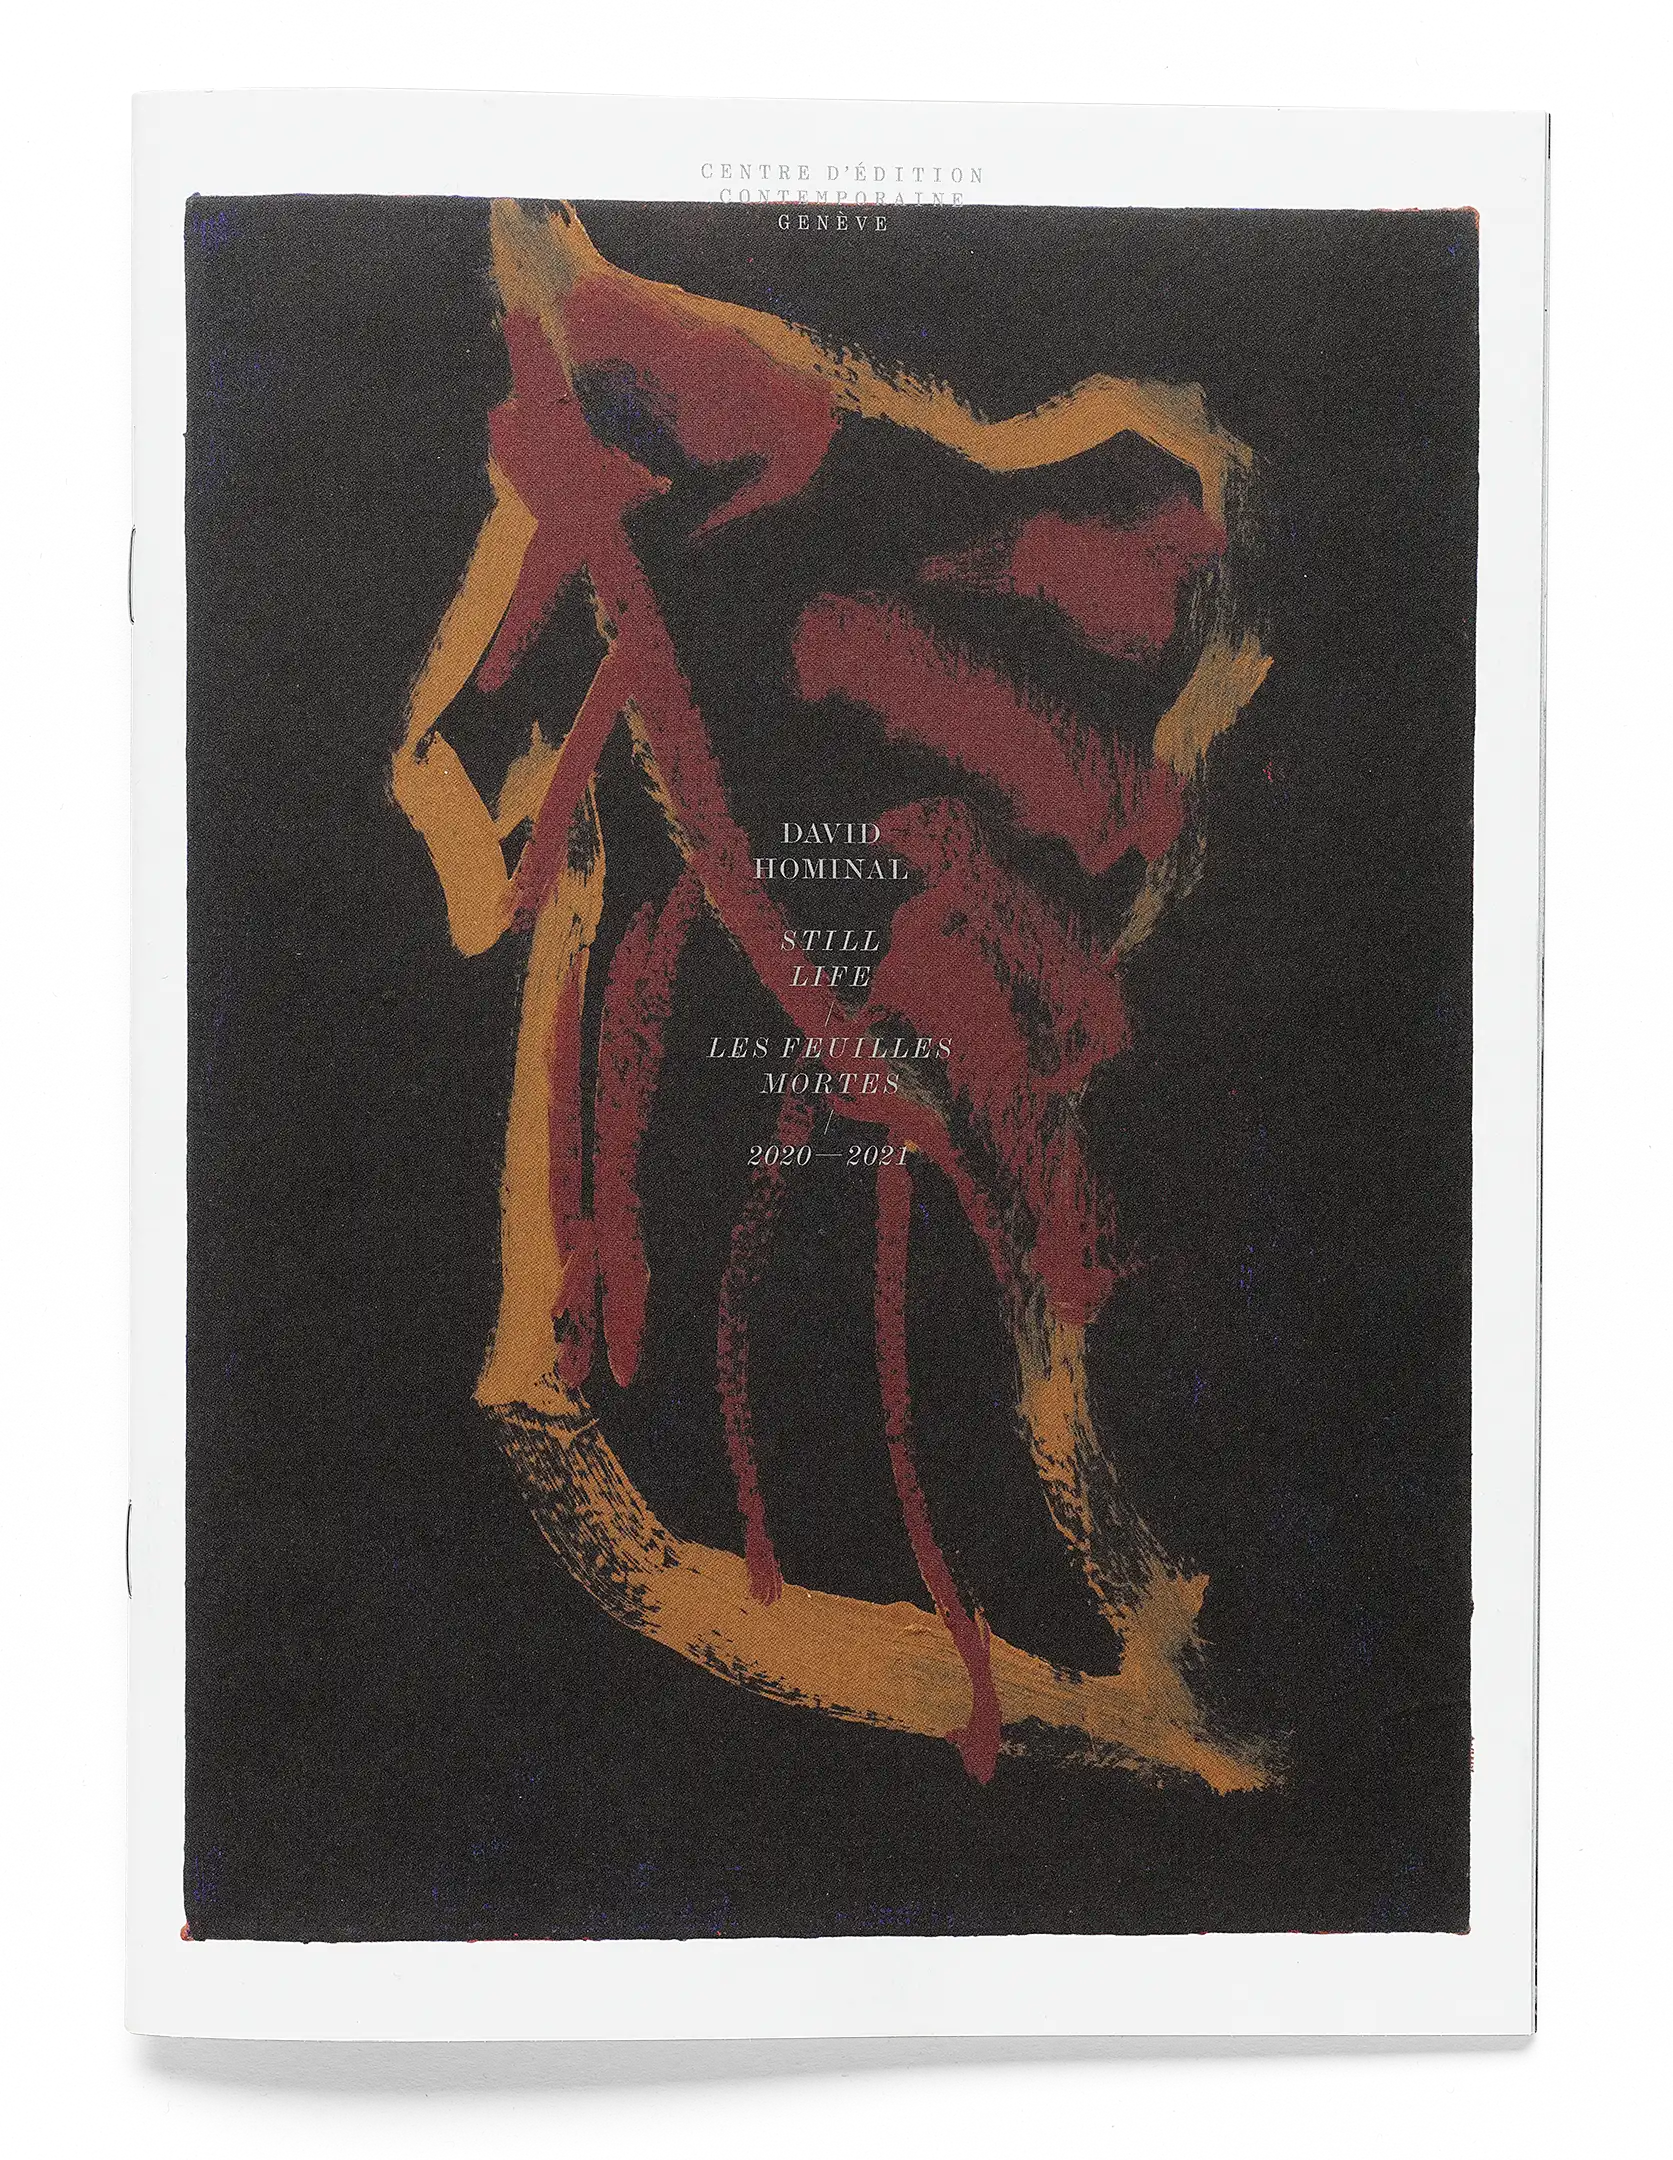 Peinture d’une feuille morte sur la couverture de la publication de David Hominal, Still Life/Les Feuilles mortes